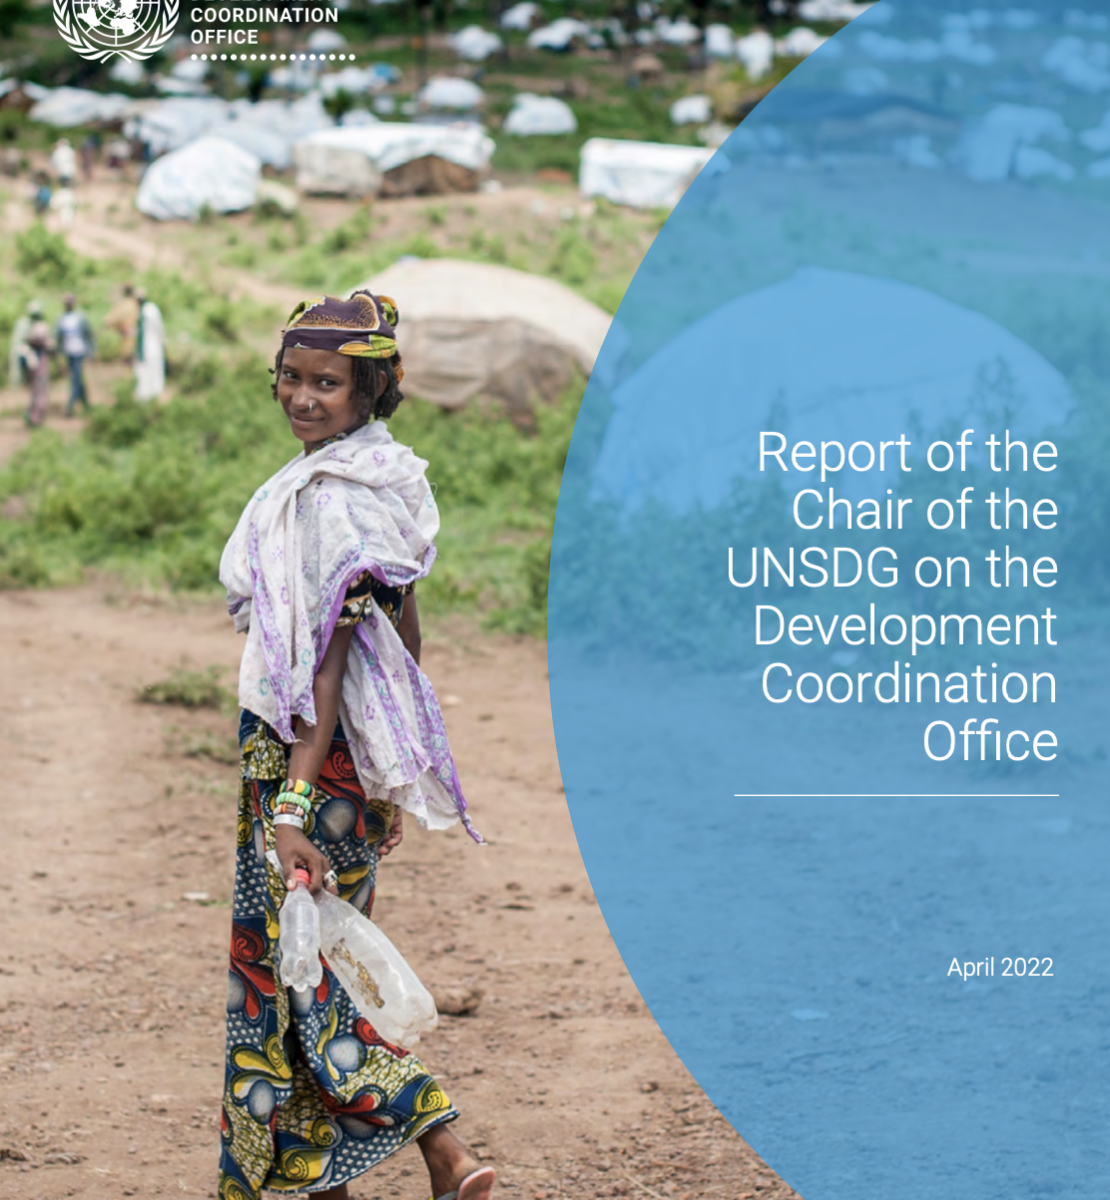 غلاف تقرير رئيسة مجموعة الأمم المتحدة للتنمية المستدامة حول مكتب التنسيق الإنمائي.